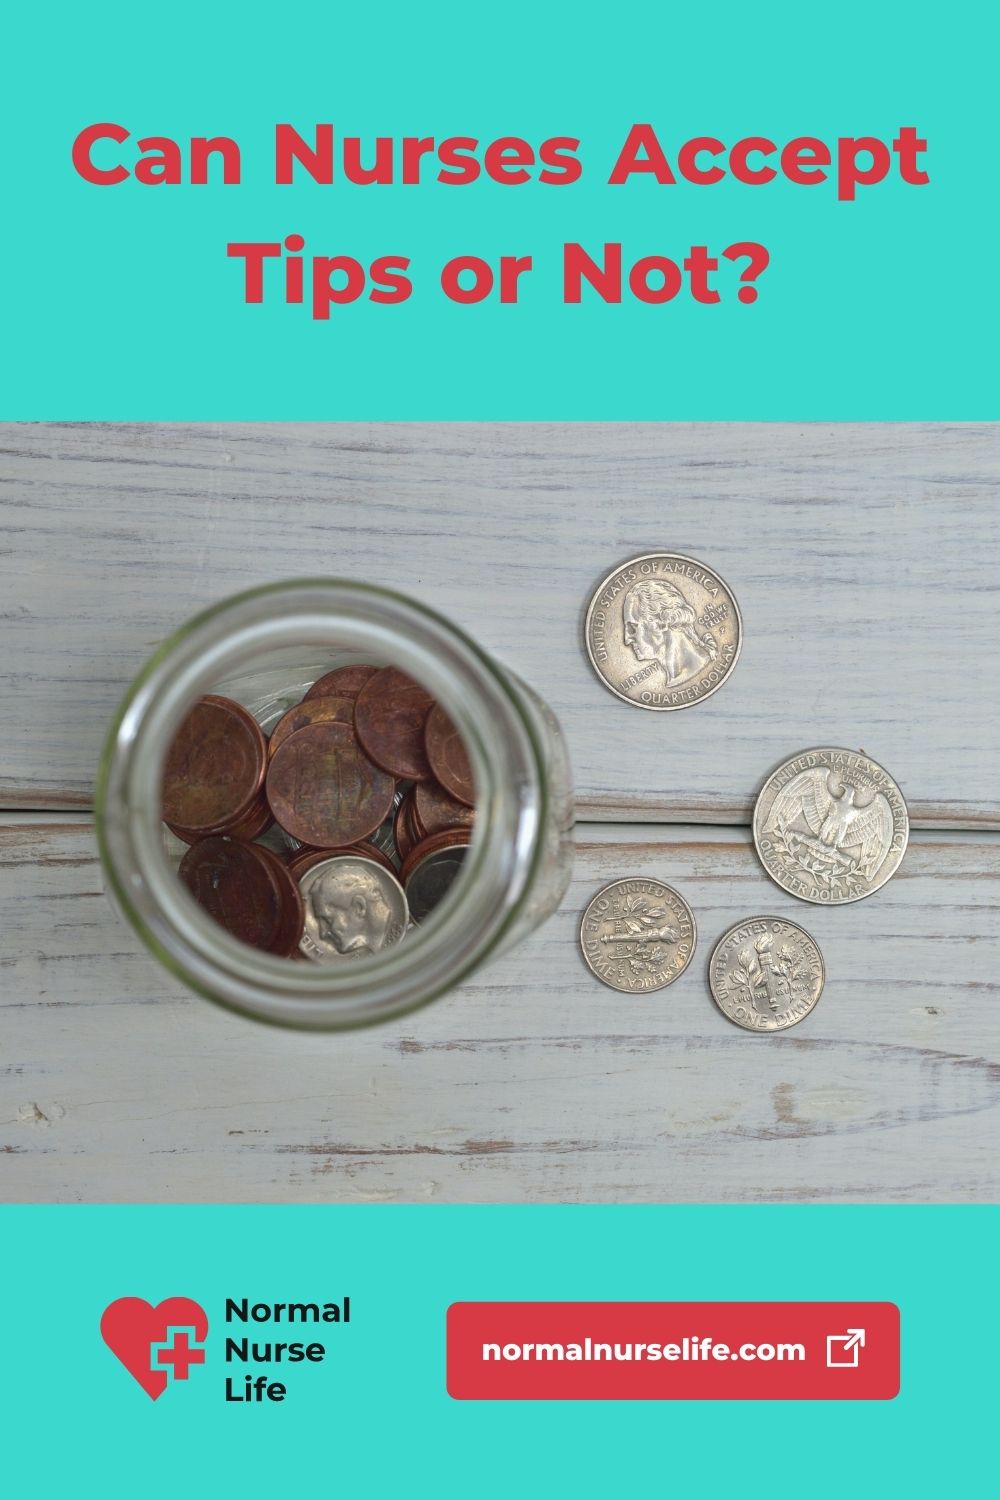 Can nurses accept tips or money